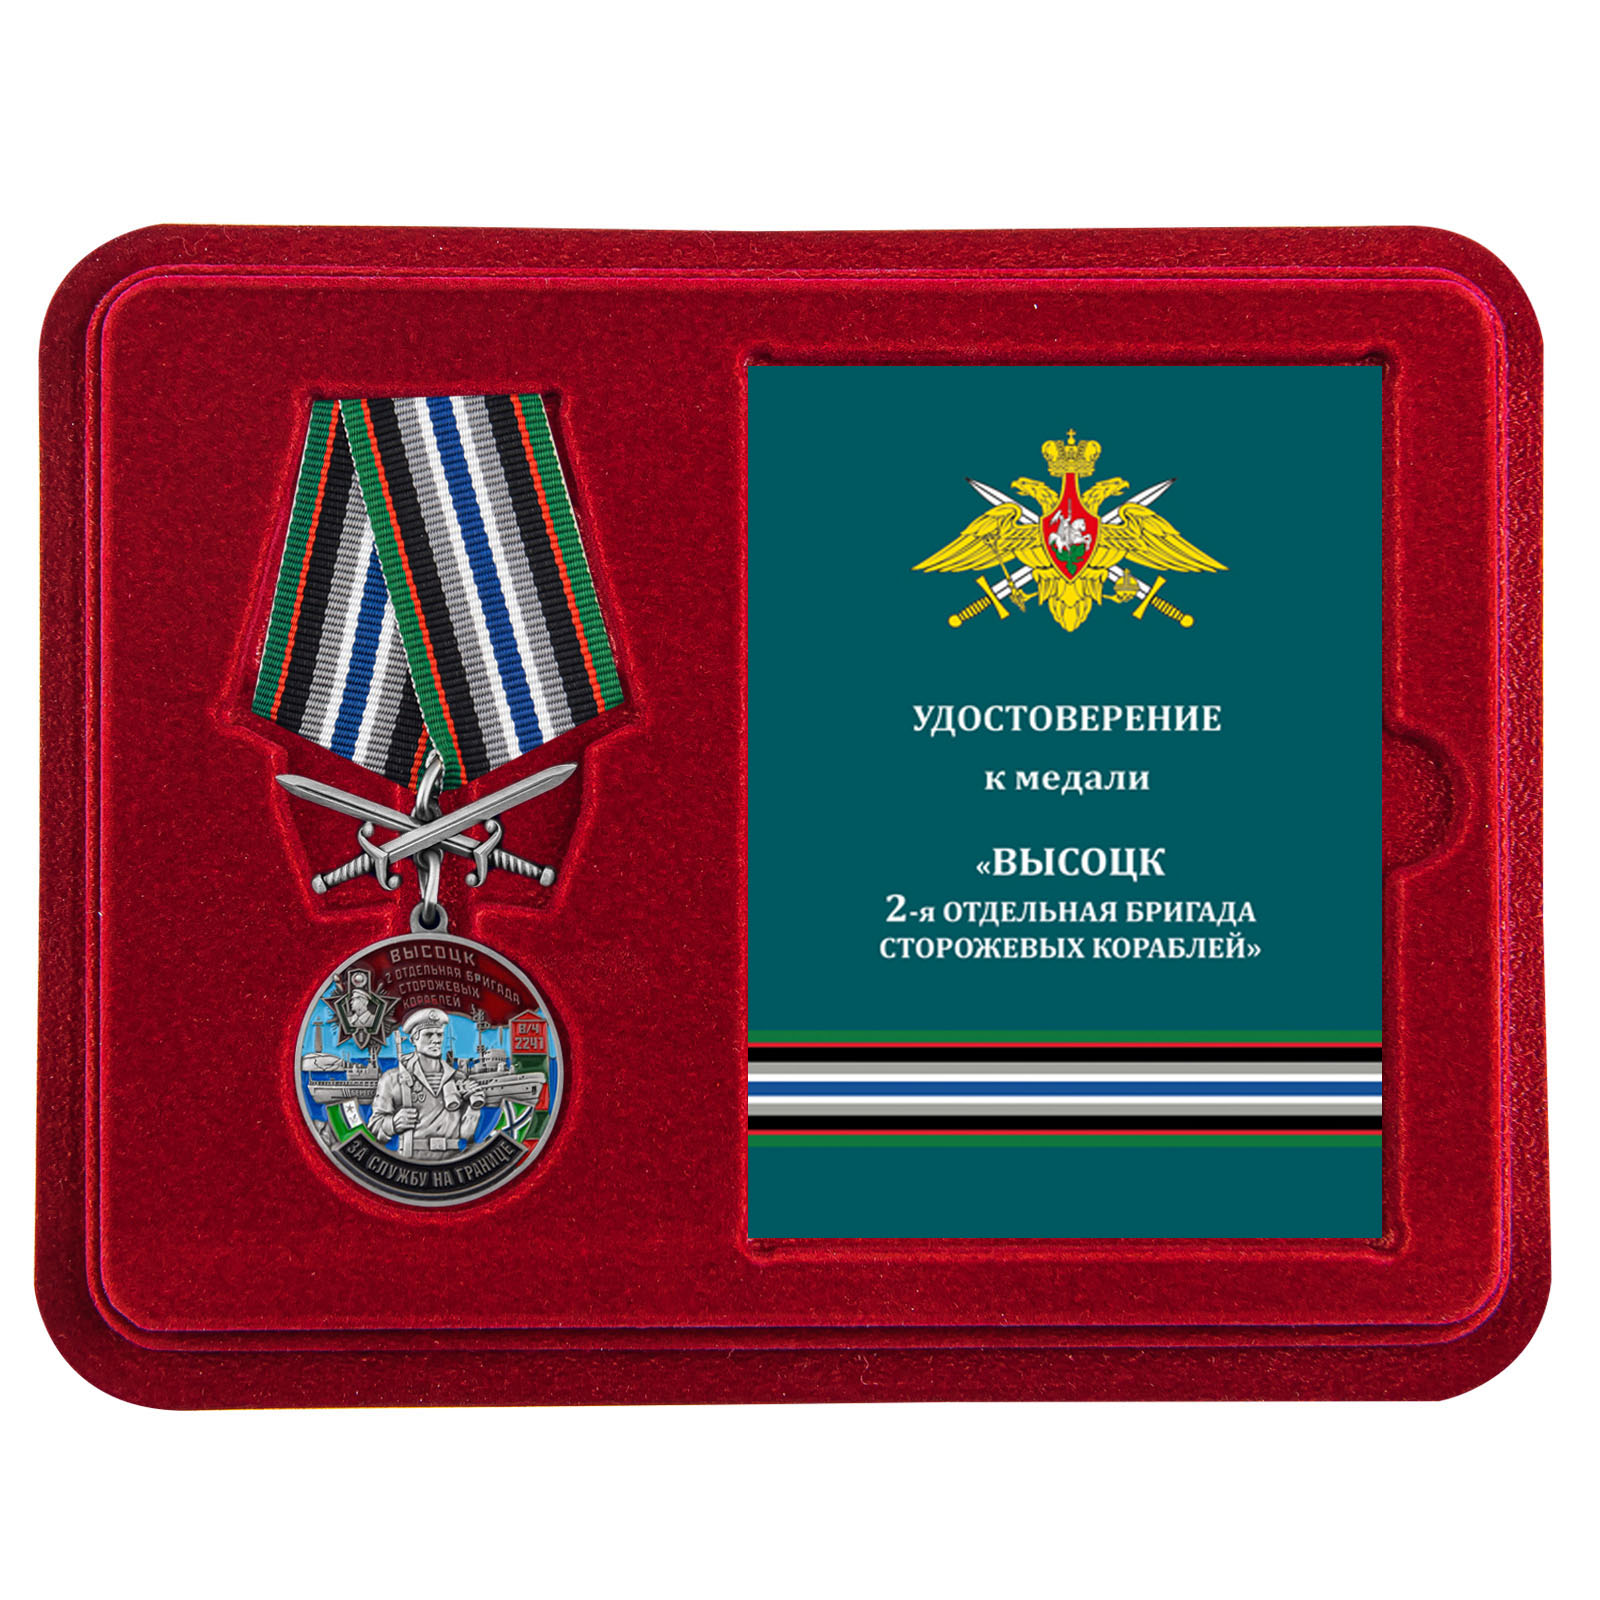 Купить медаль За службу во 2-ой бригаде сторожевых кораблей онлайн